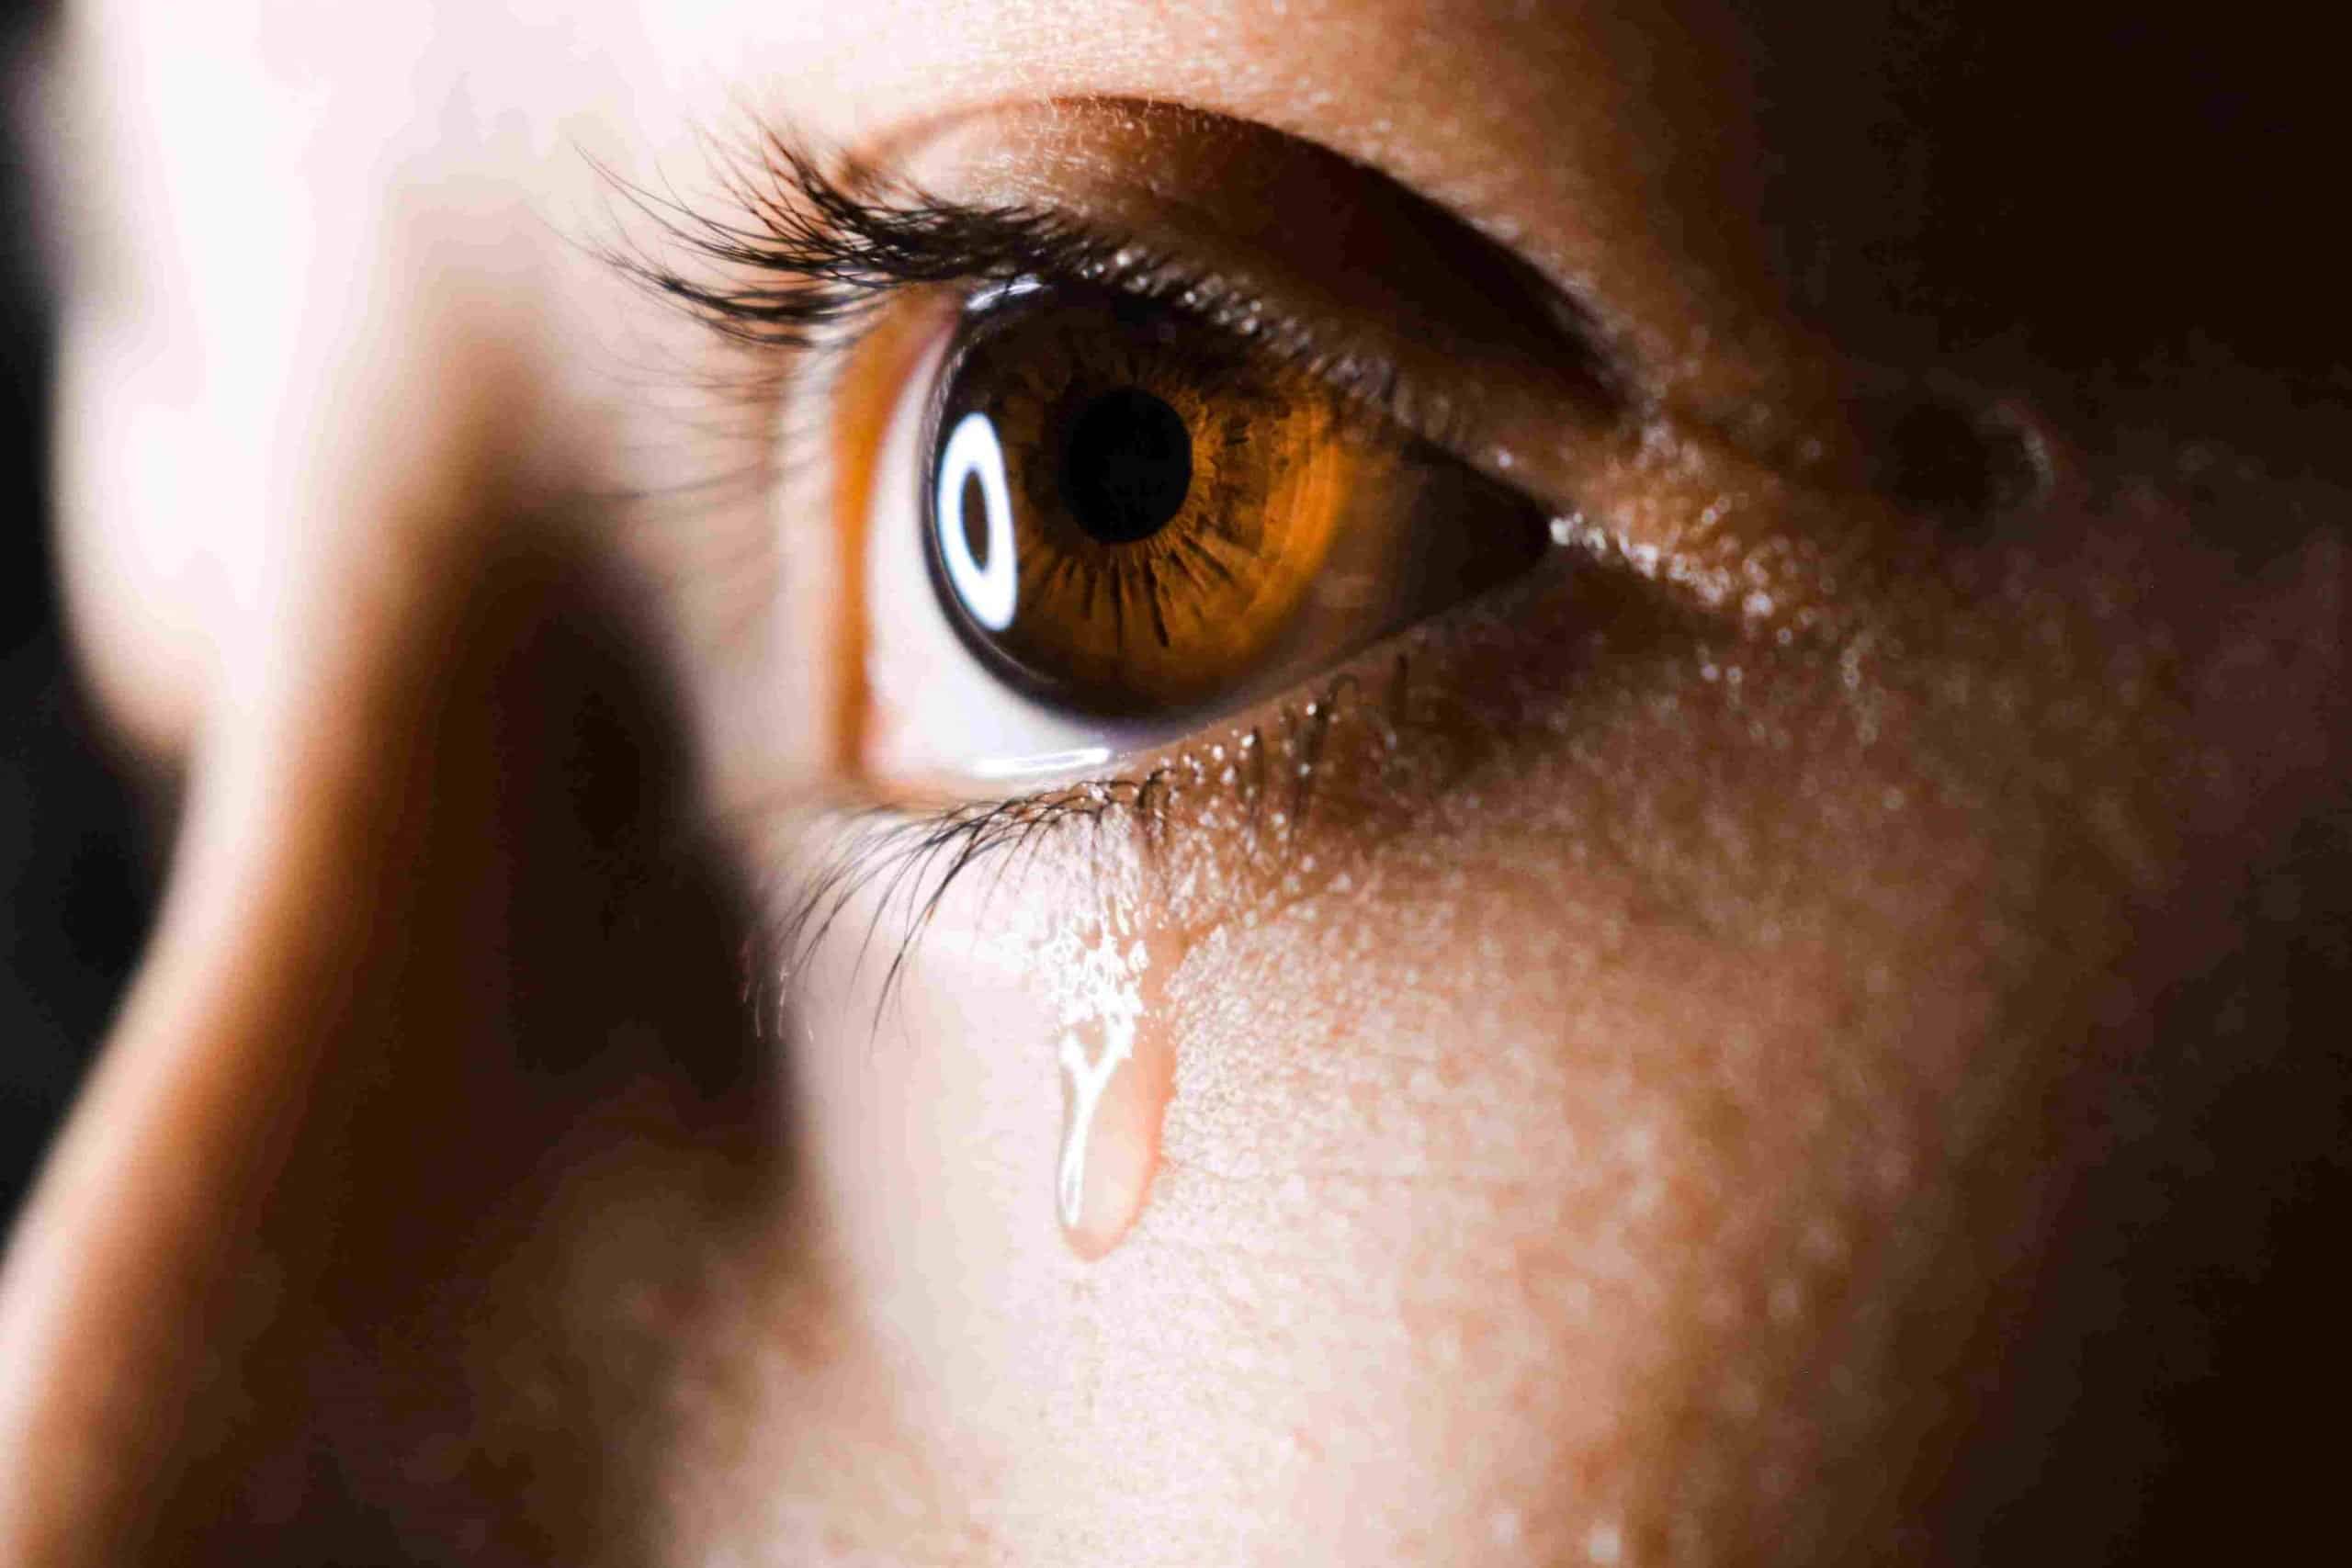 Το κλάμα είναι μία αντίδραση του οργανισμού που έχει συνδεθεί κυρίως με δυσάρεστα συναισθήματα, με τη λύπη, την στεναχώρια και την πίεση.